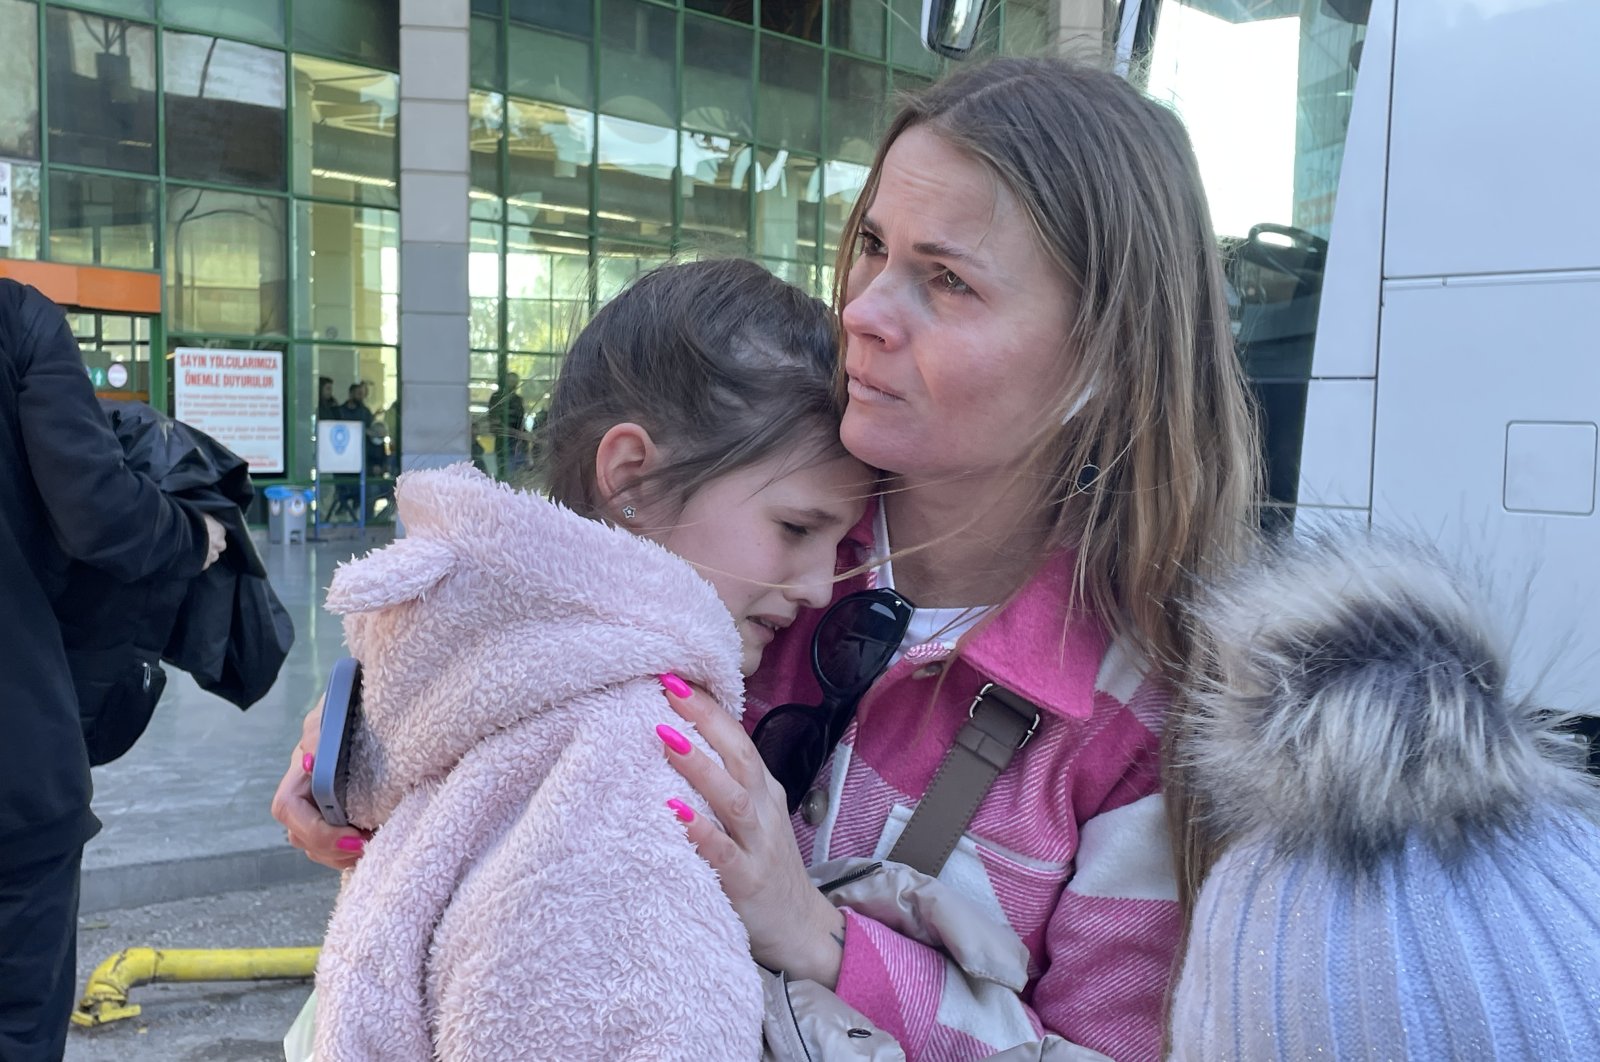 Olha Yeromchenko hugs her daughters, in Antalya, southern Turkey, March 12, 2022. (AA Photo)